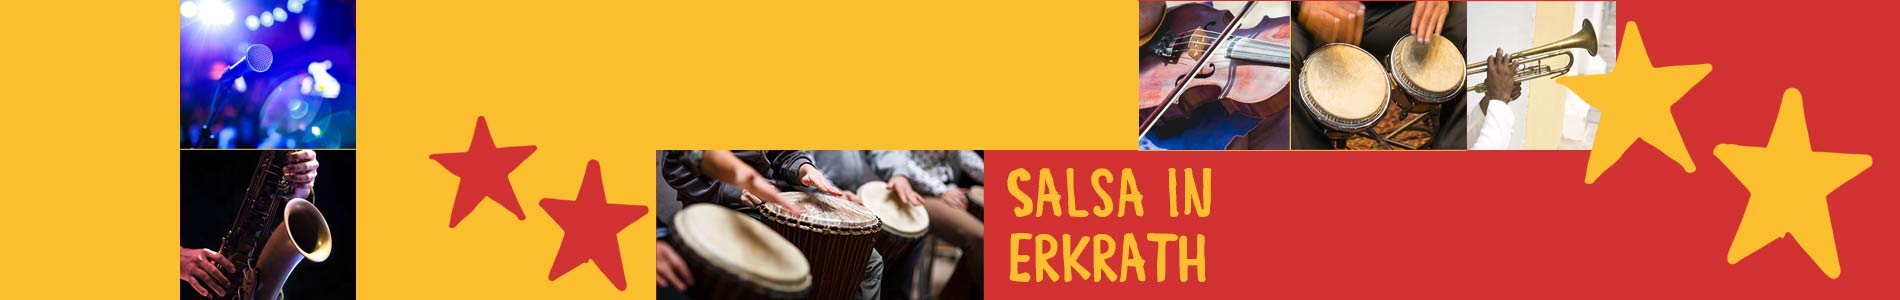 Salsa in Erkrath – Salsa lernen und tanzen, Tanzkurse, Partys, Veranstaltungen